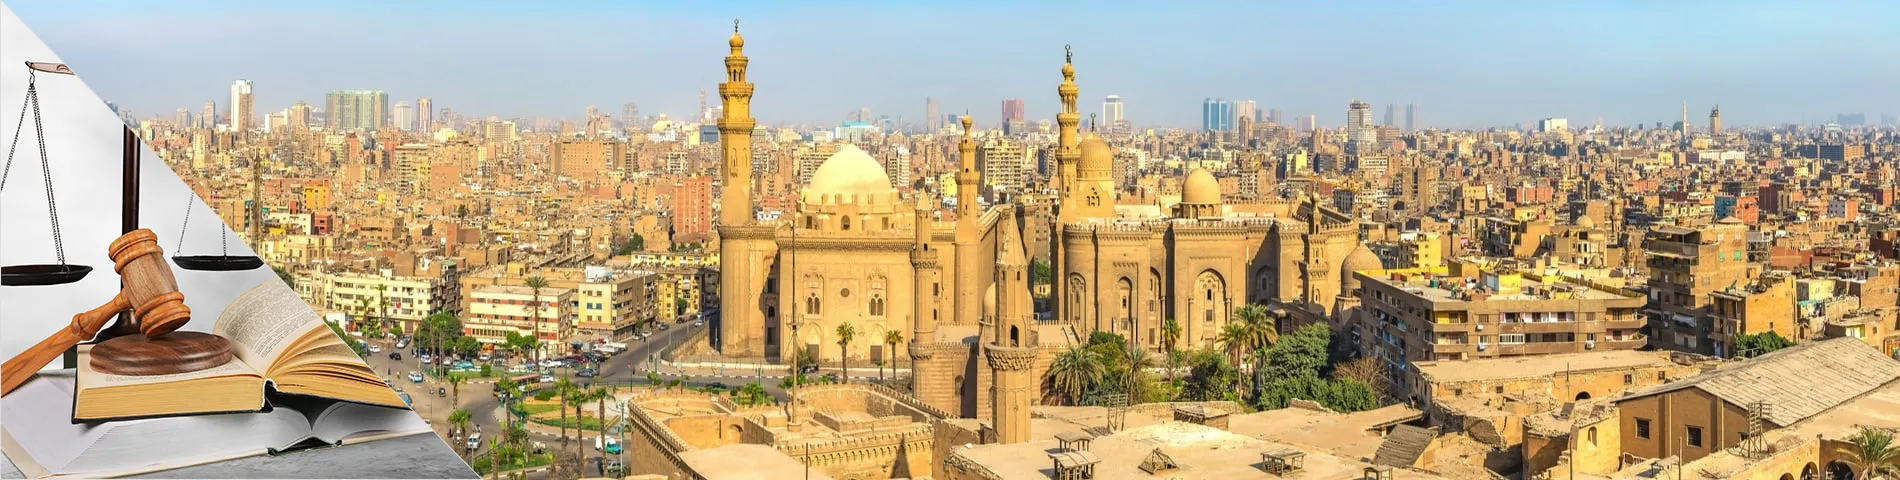 Kair - Arabski dla Prawników